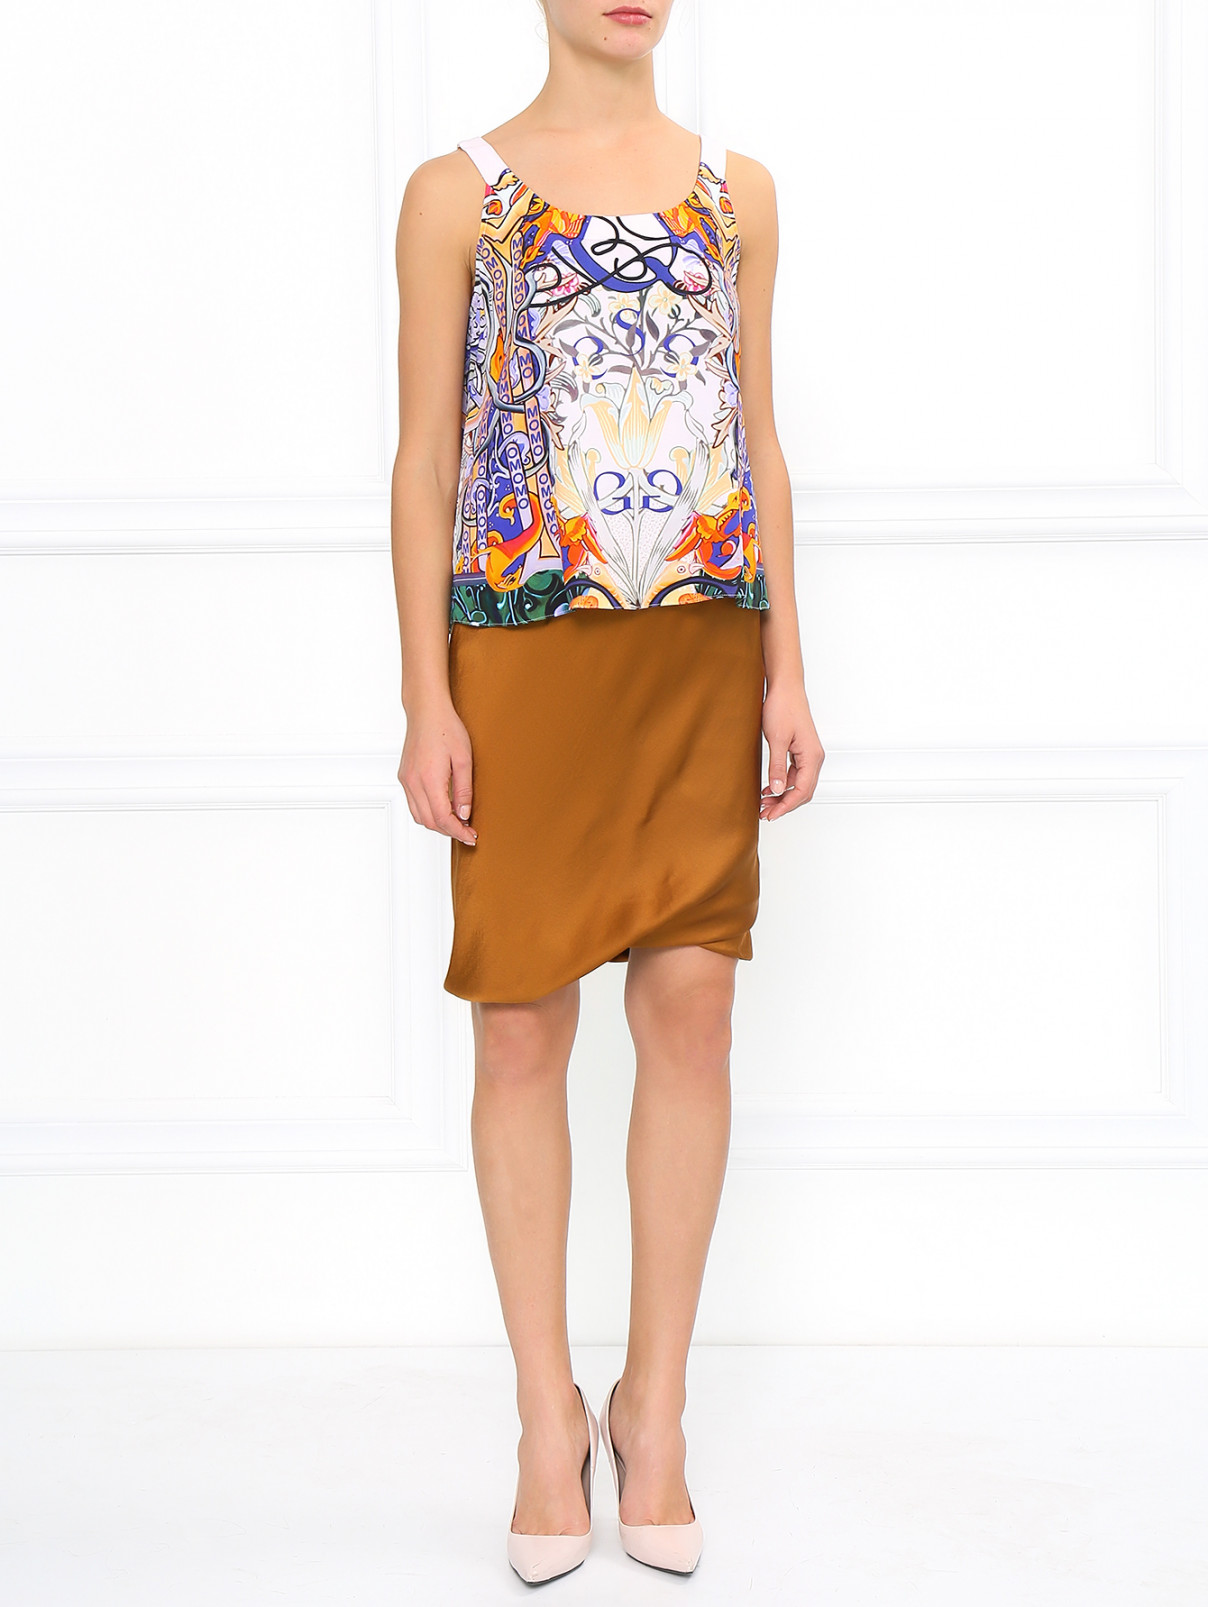 Шелковая юбка на резинке Mantu  –  Модель Общий вид  – Цвет:  Металлик